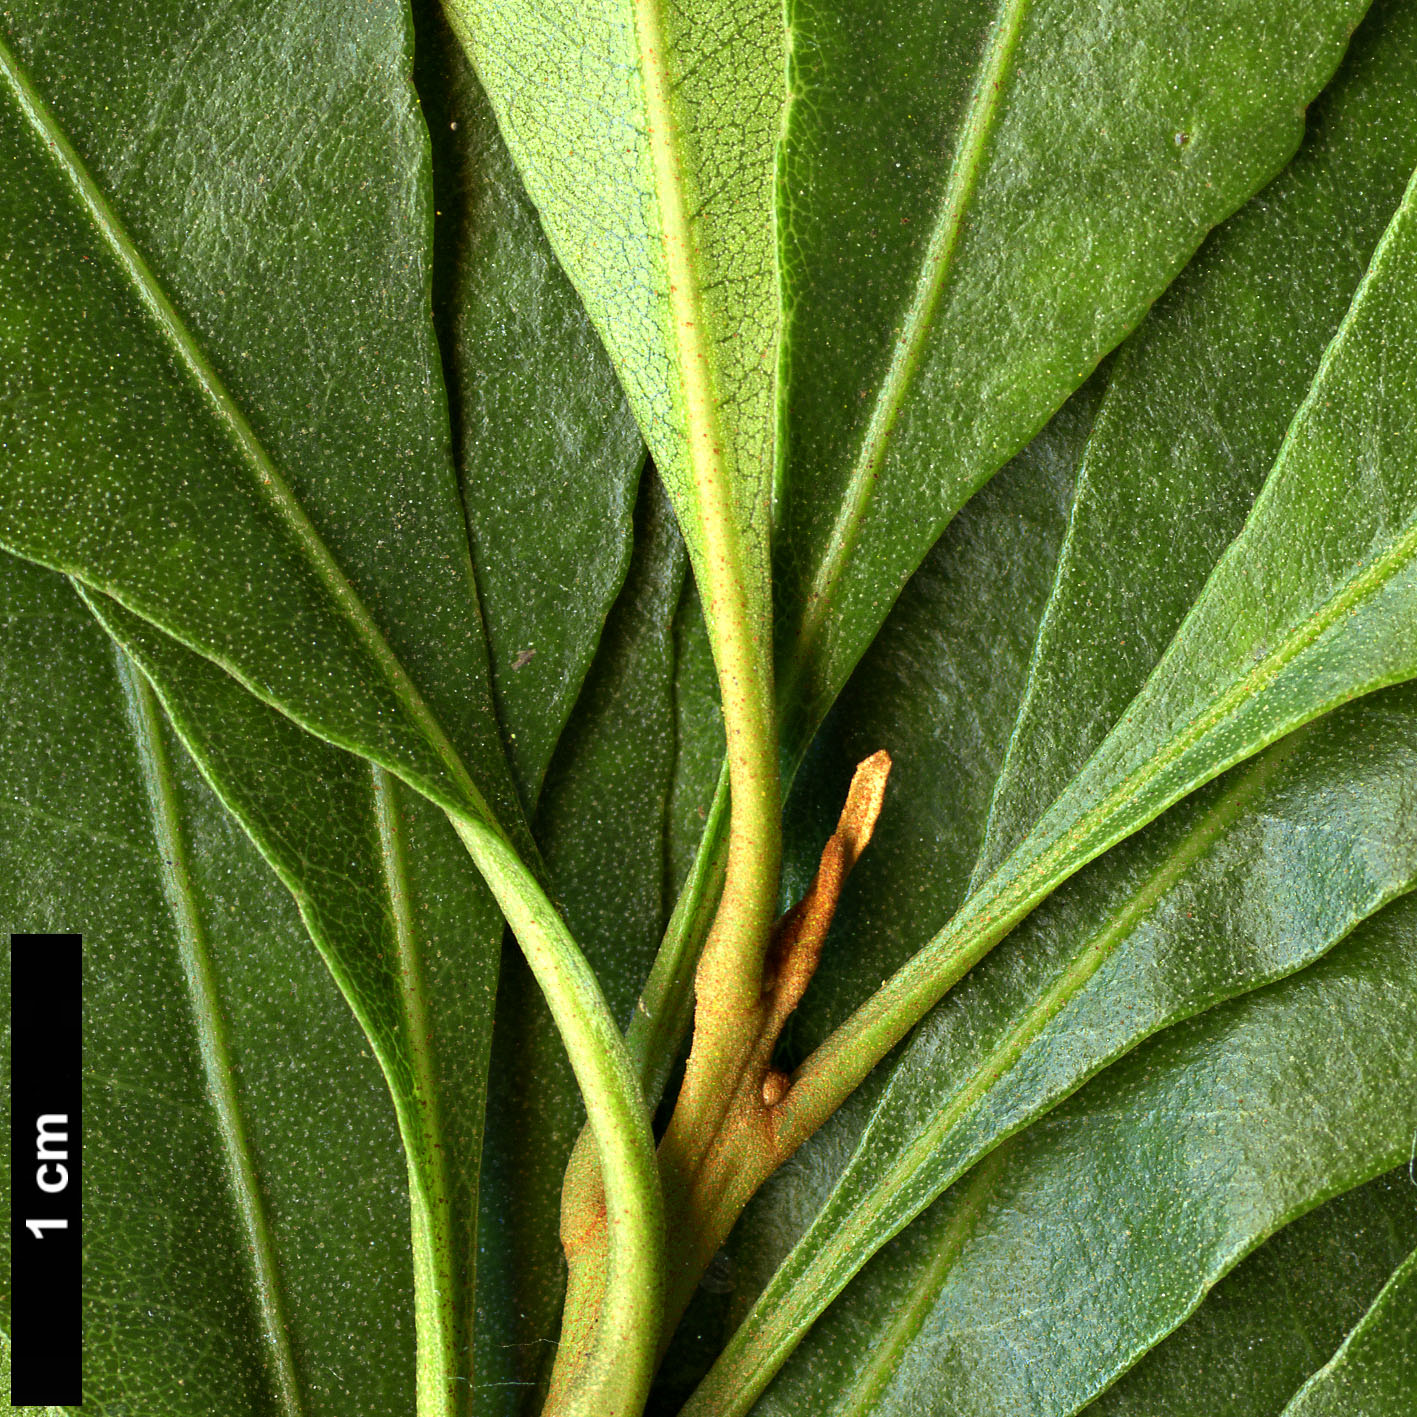 High resolution image: Family: Myricaceae - Genus: Myrica - Taxon: faya